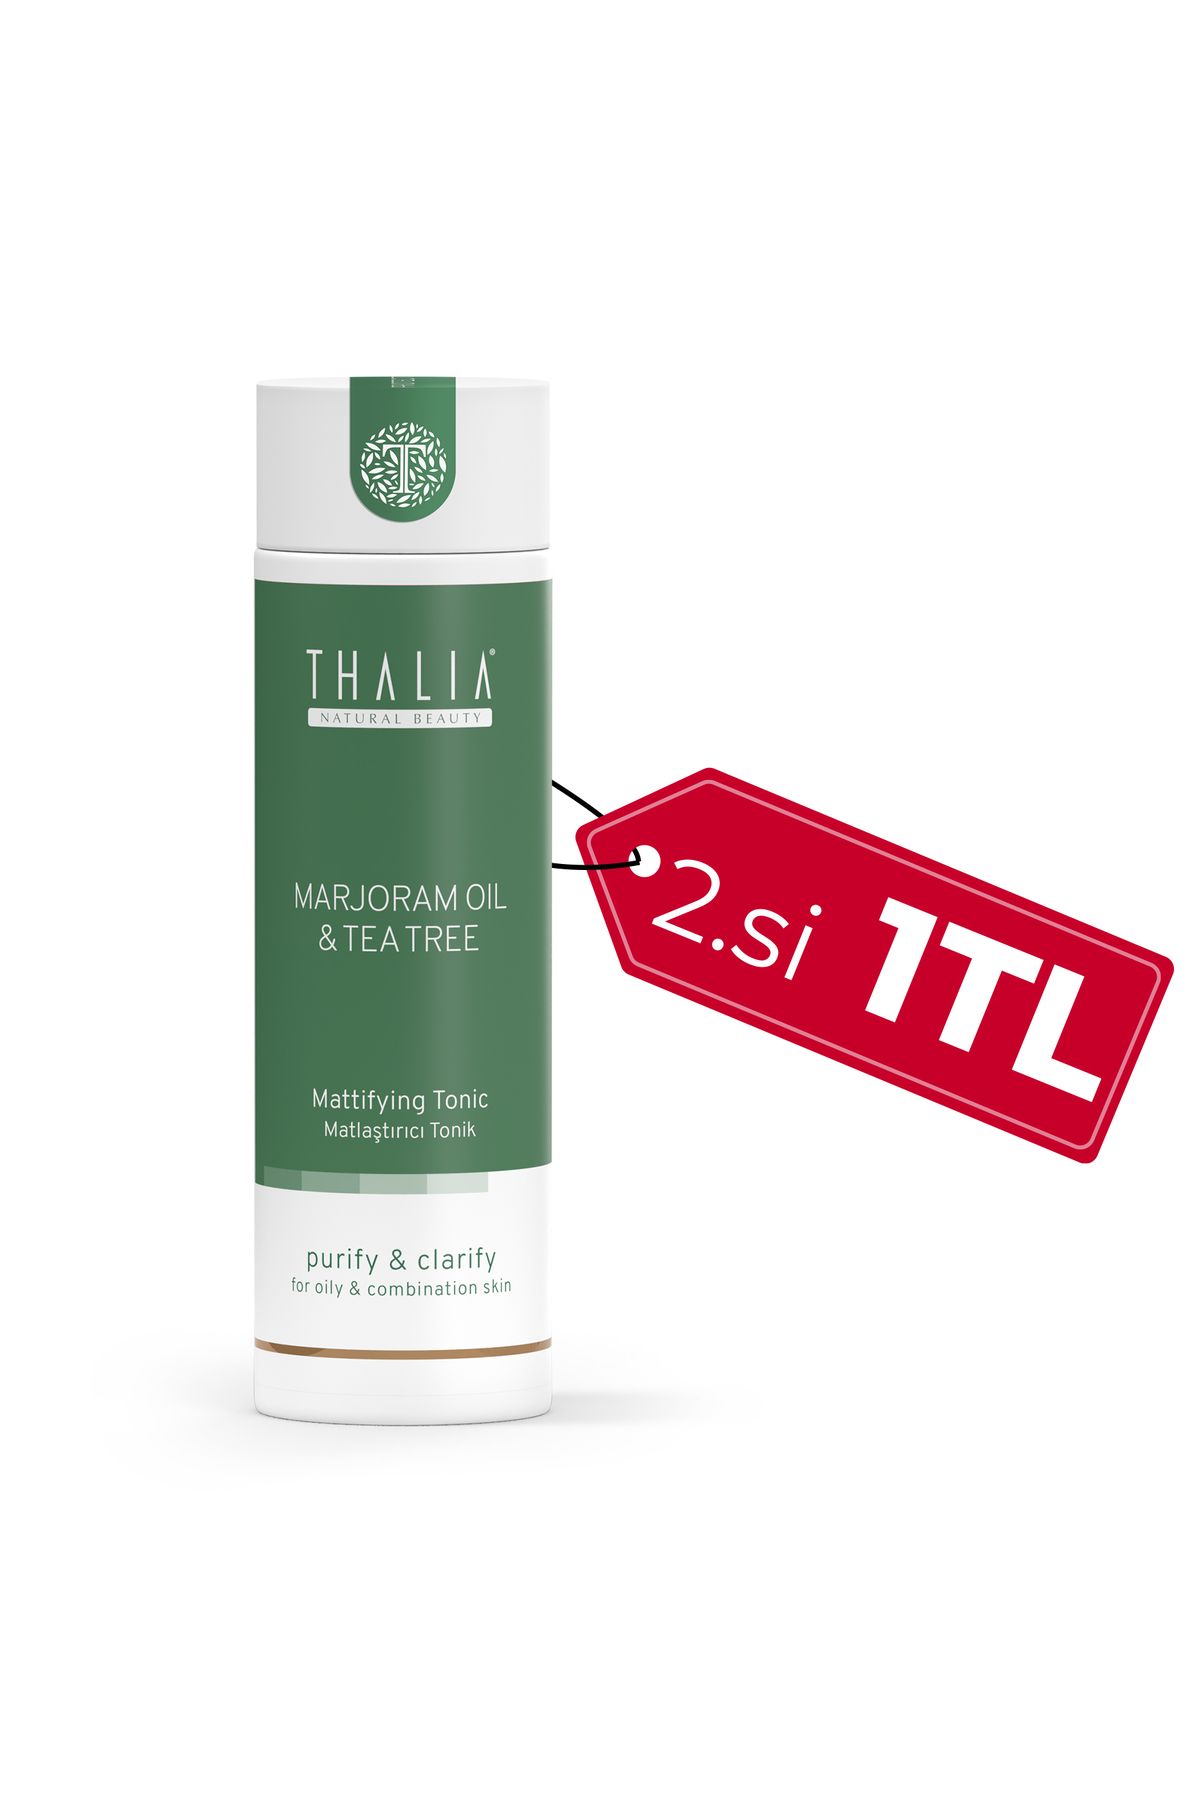 Thalia Akne Gidermeye & Gözenek Sıkılaştırmaya Yardımcı Marjoram Yüz Temizleme Toniği 200 ml